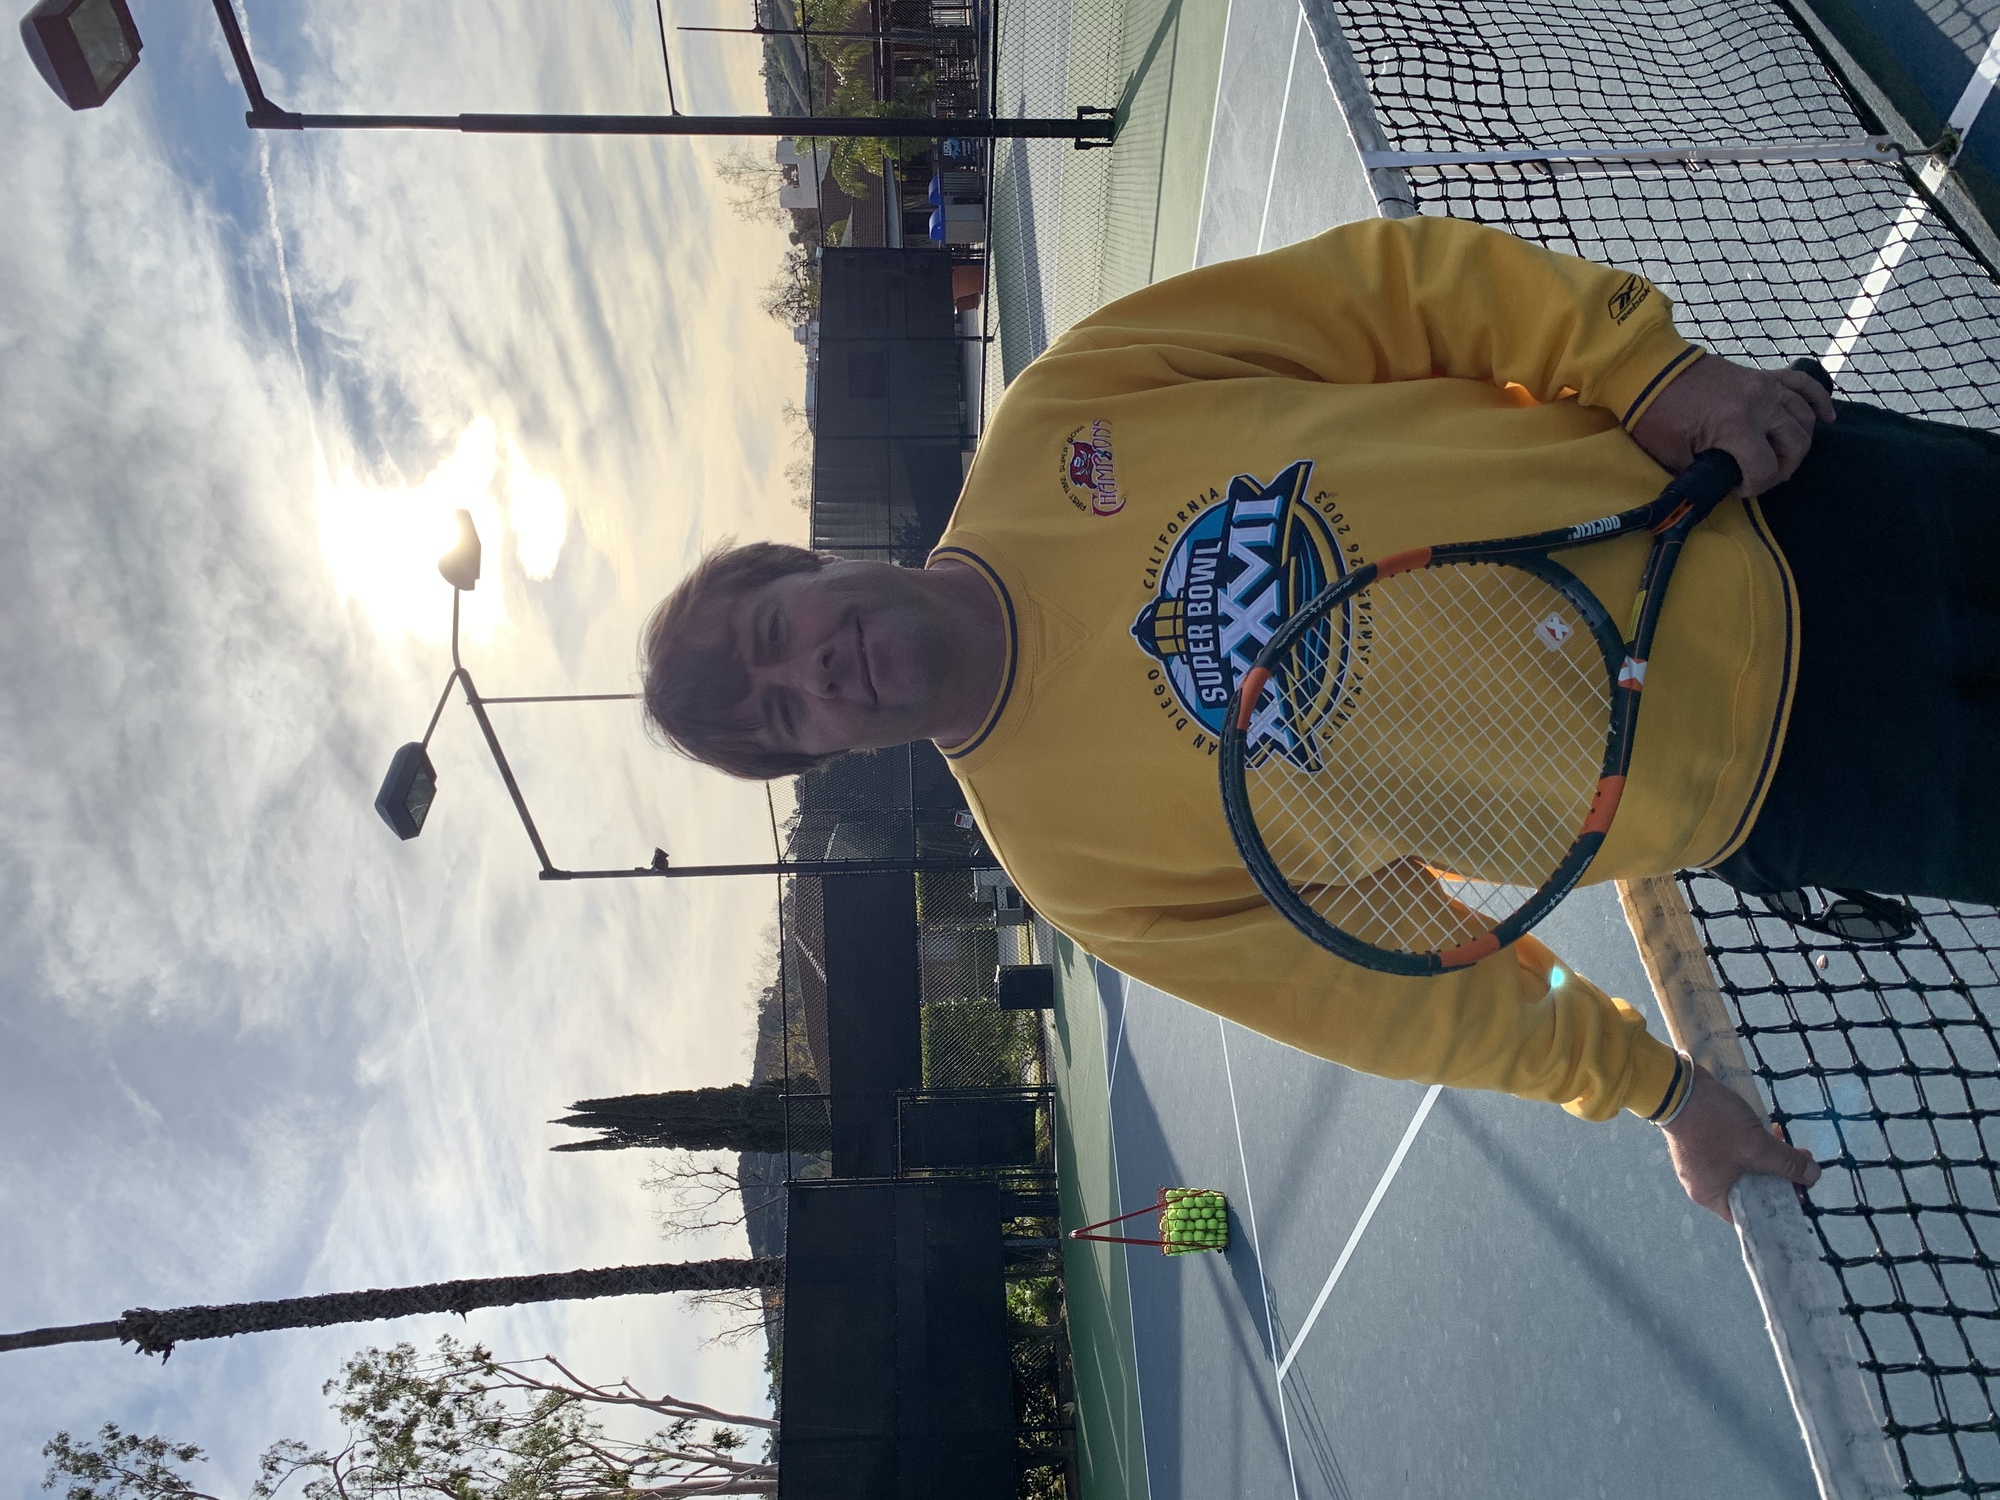 Brett W. teaches tennis lessons in Calabasas, CA